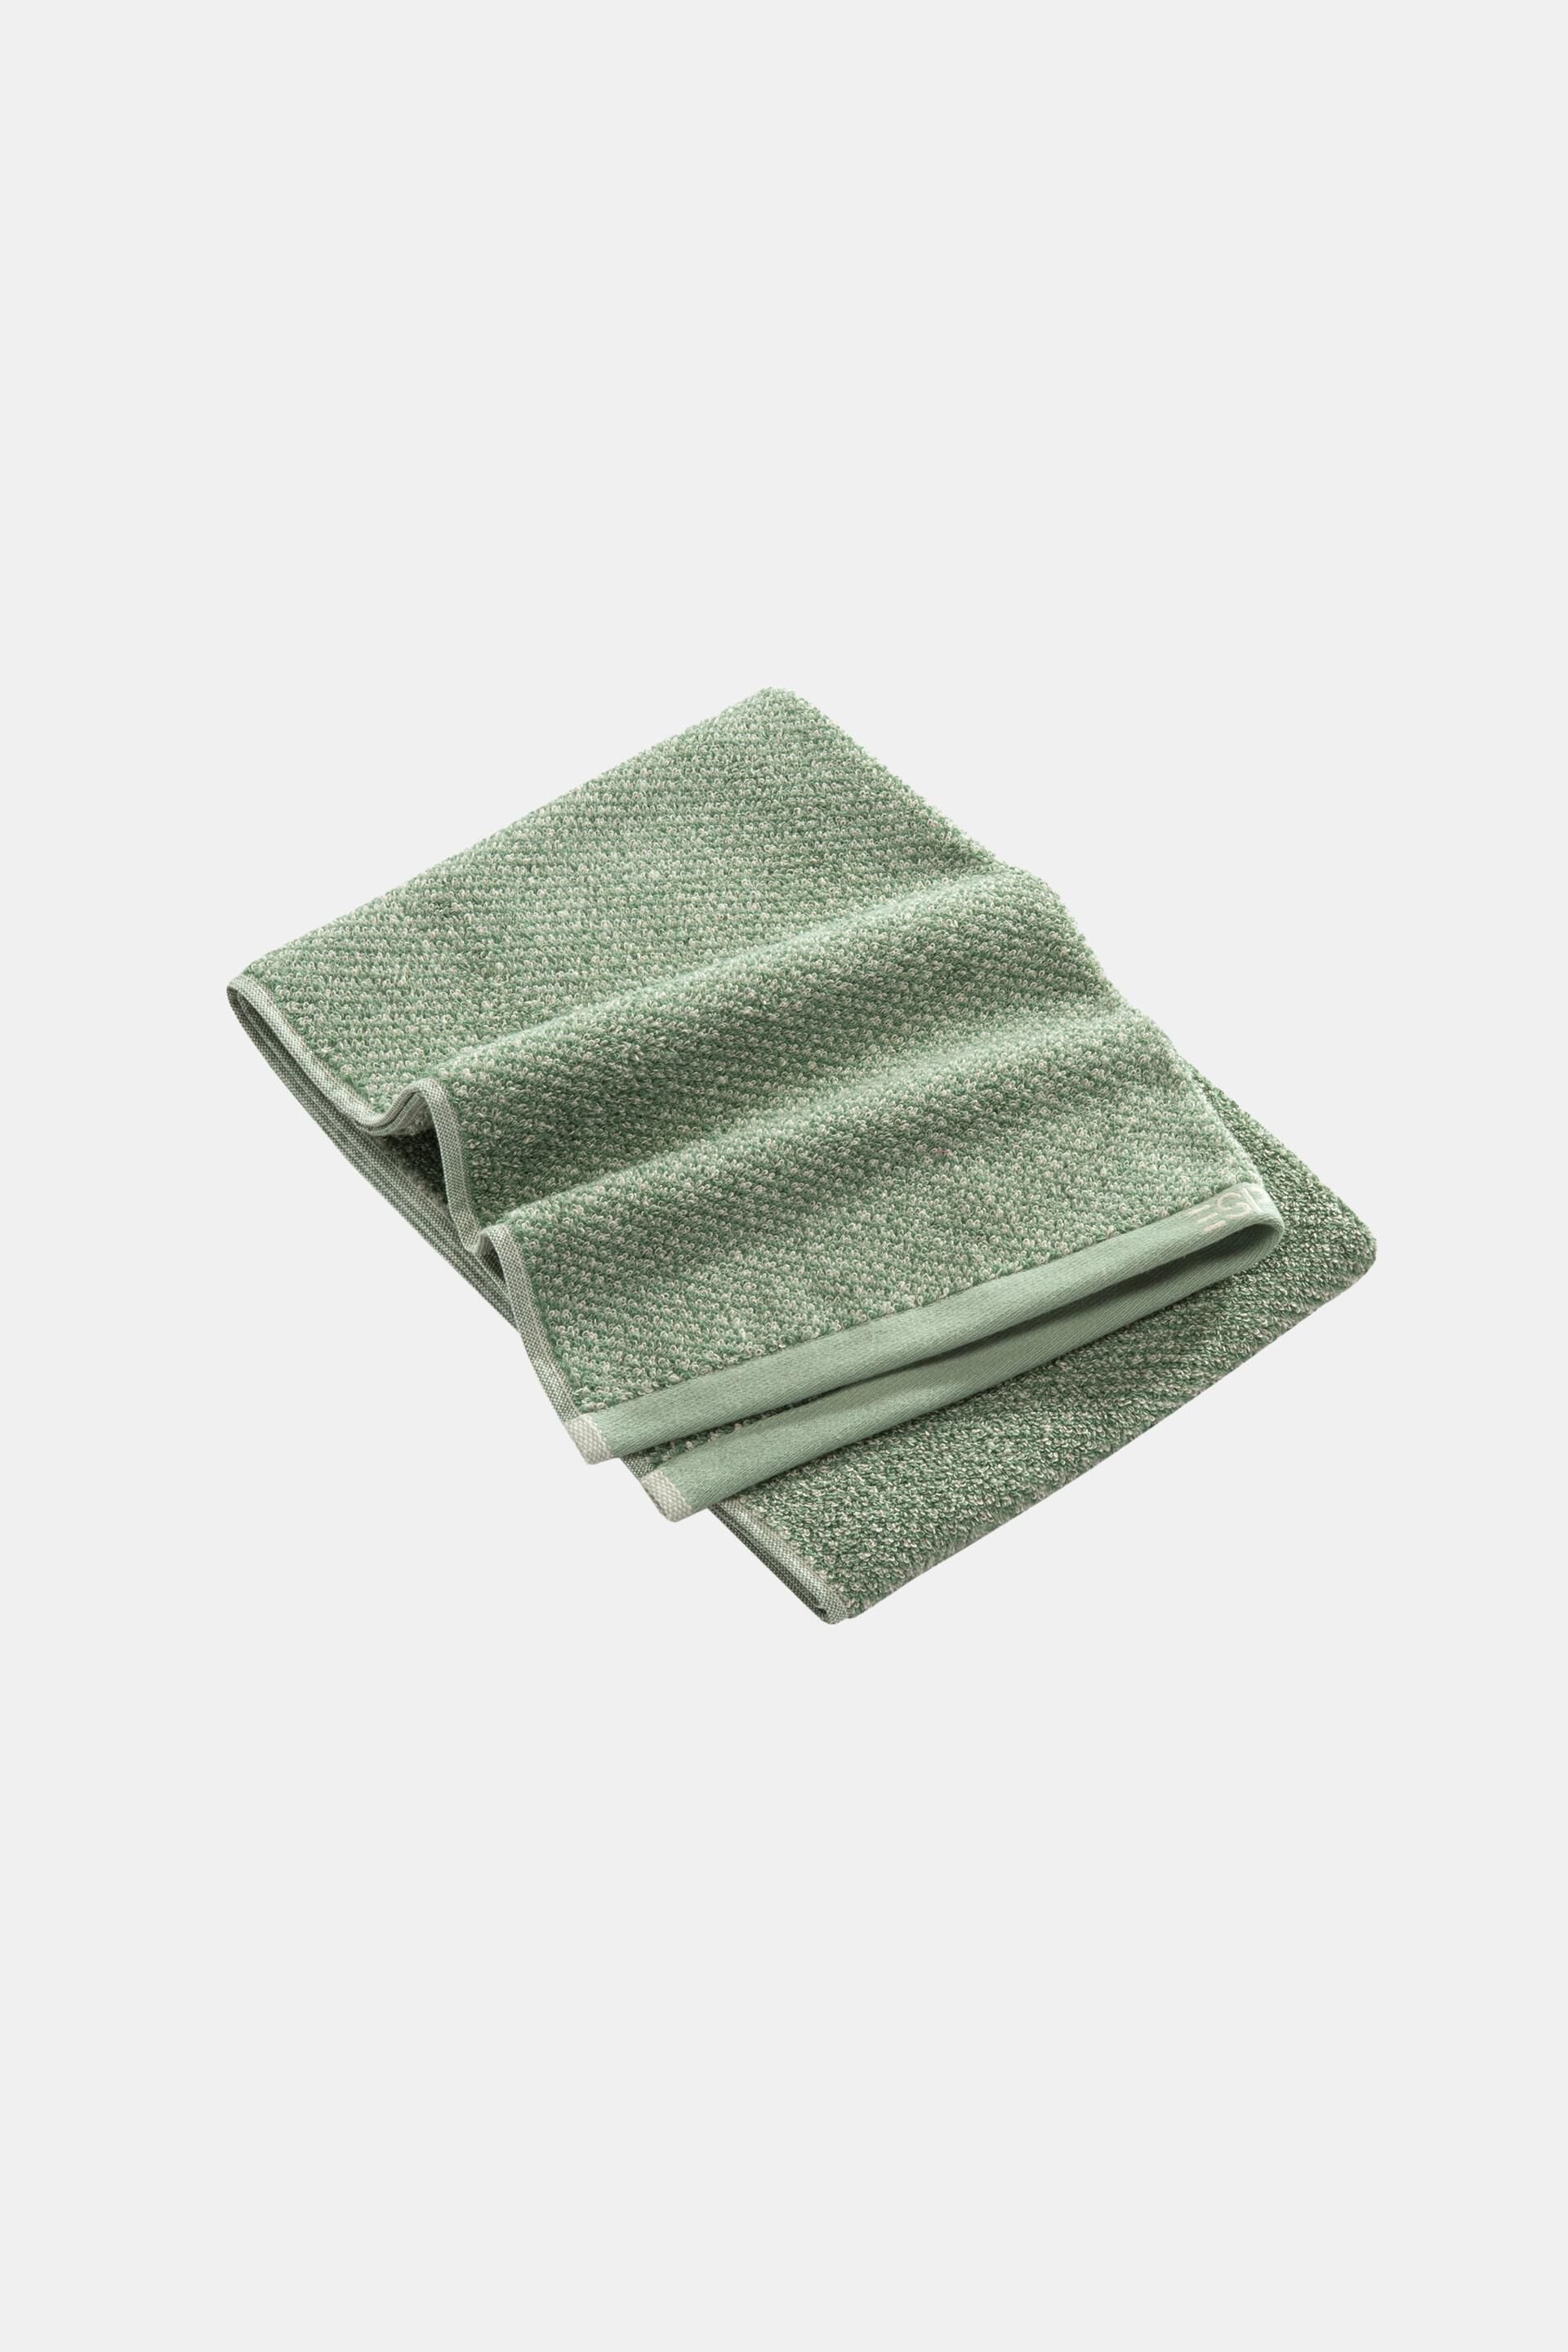 Esprit Melange 100% towel, cotton